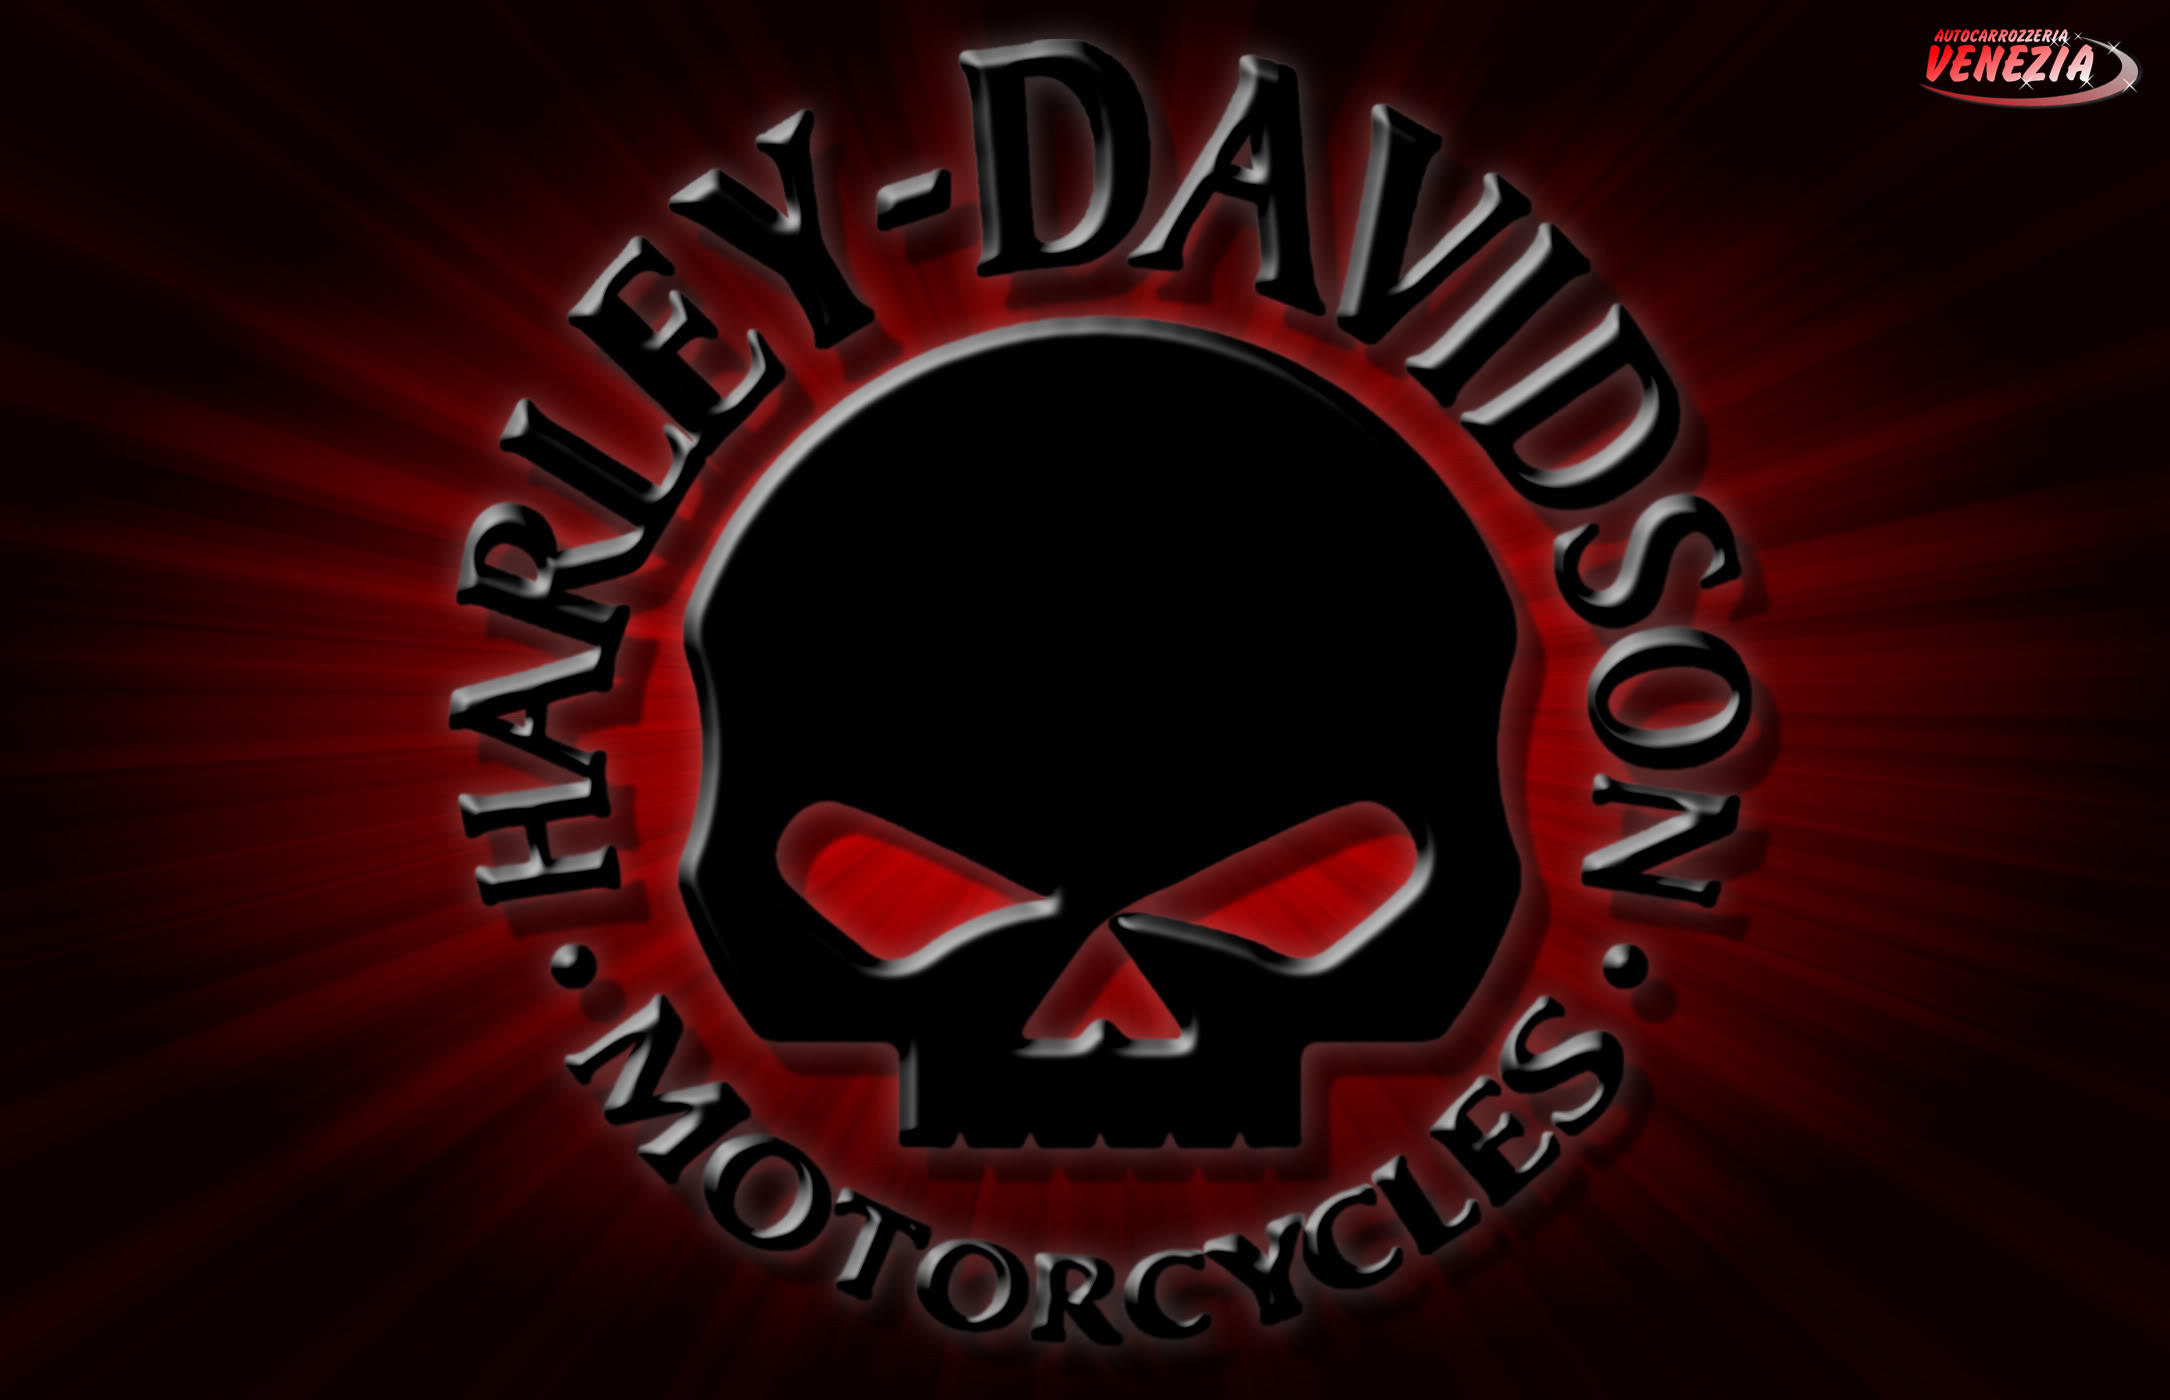 Willie G Harley Davidson Pinterest 2170x1400